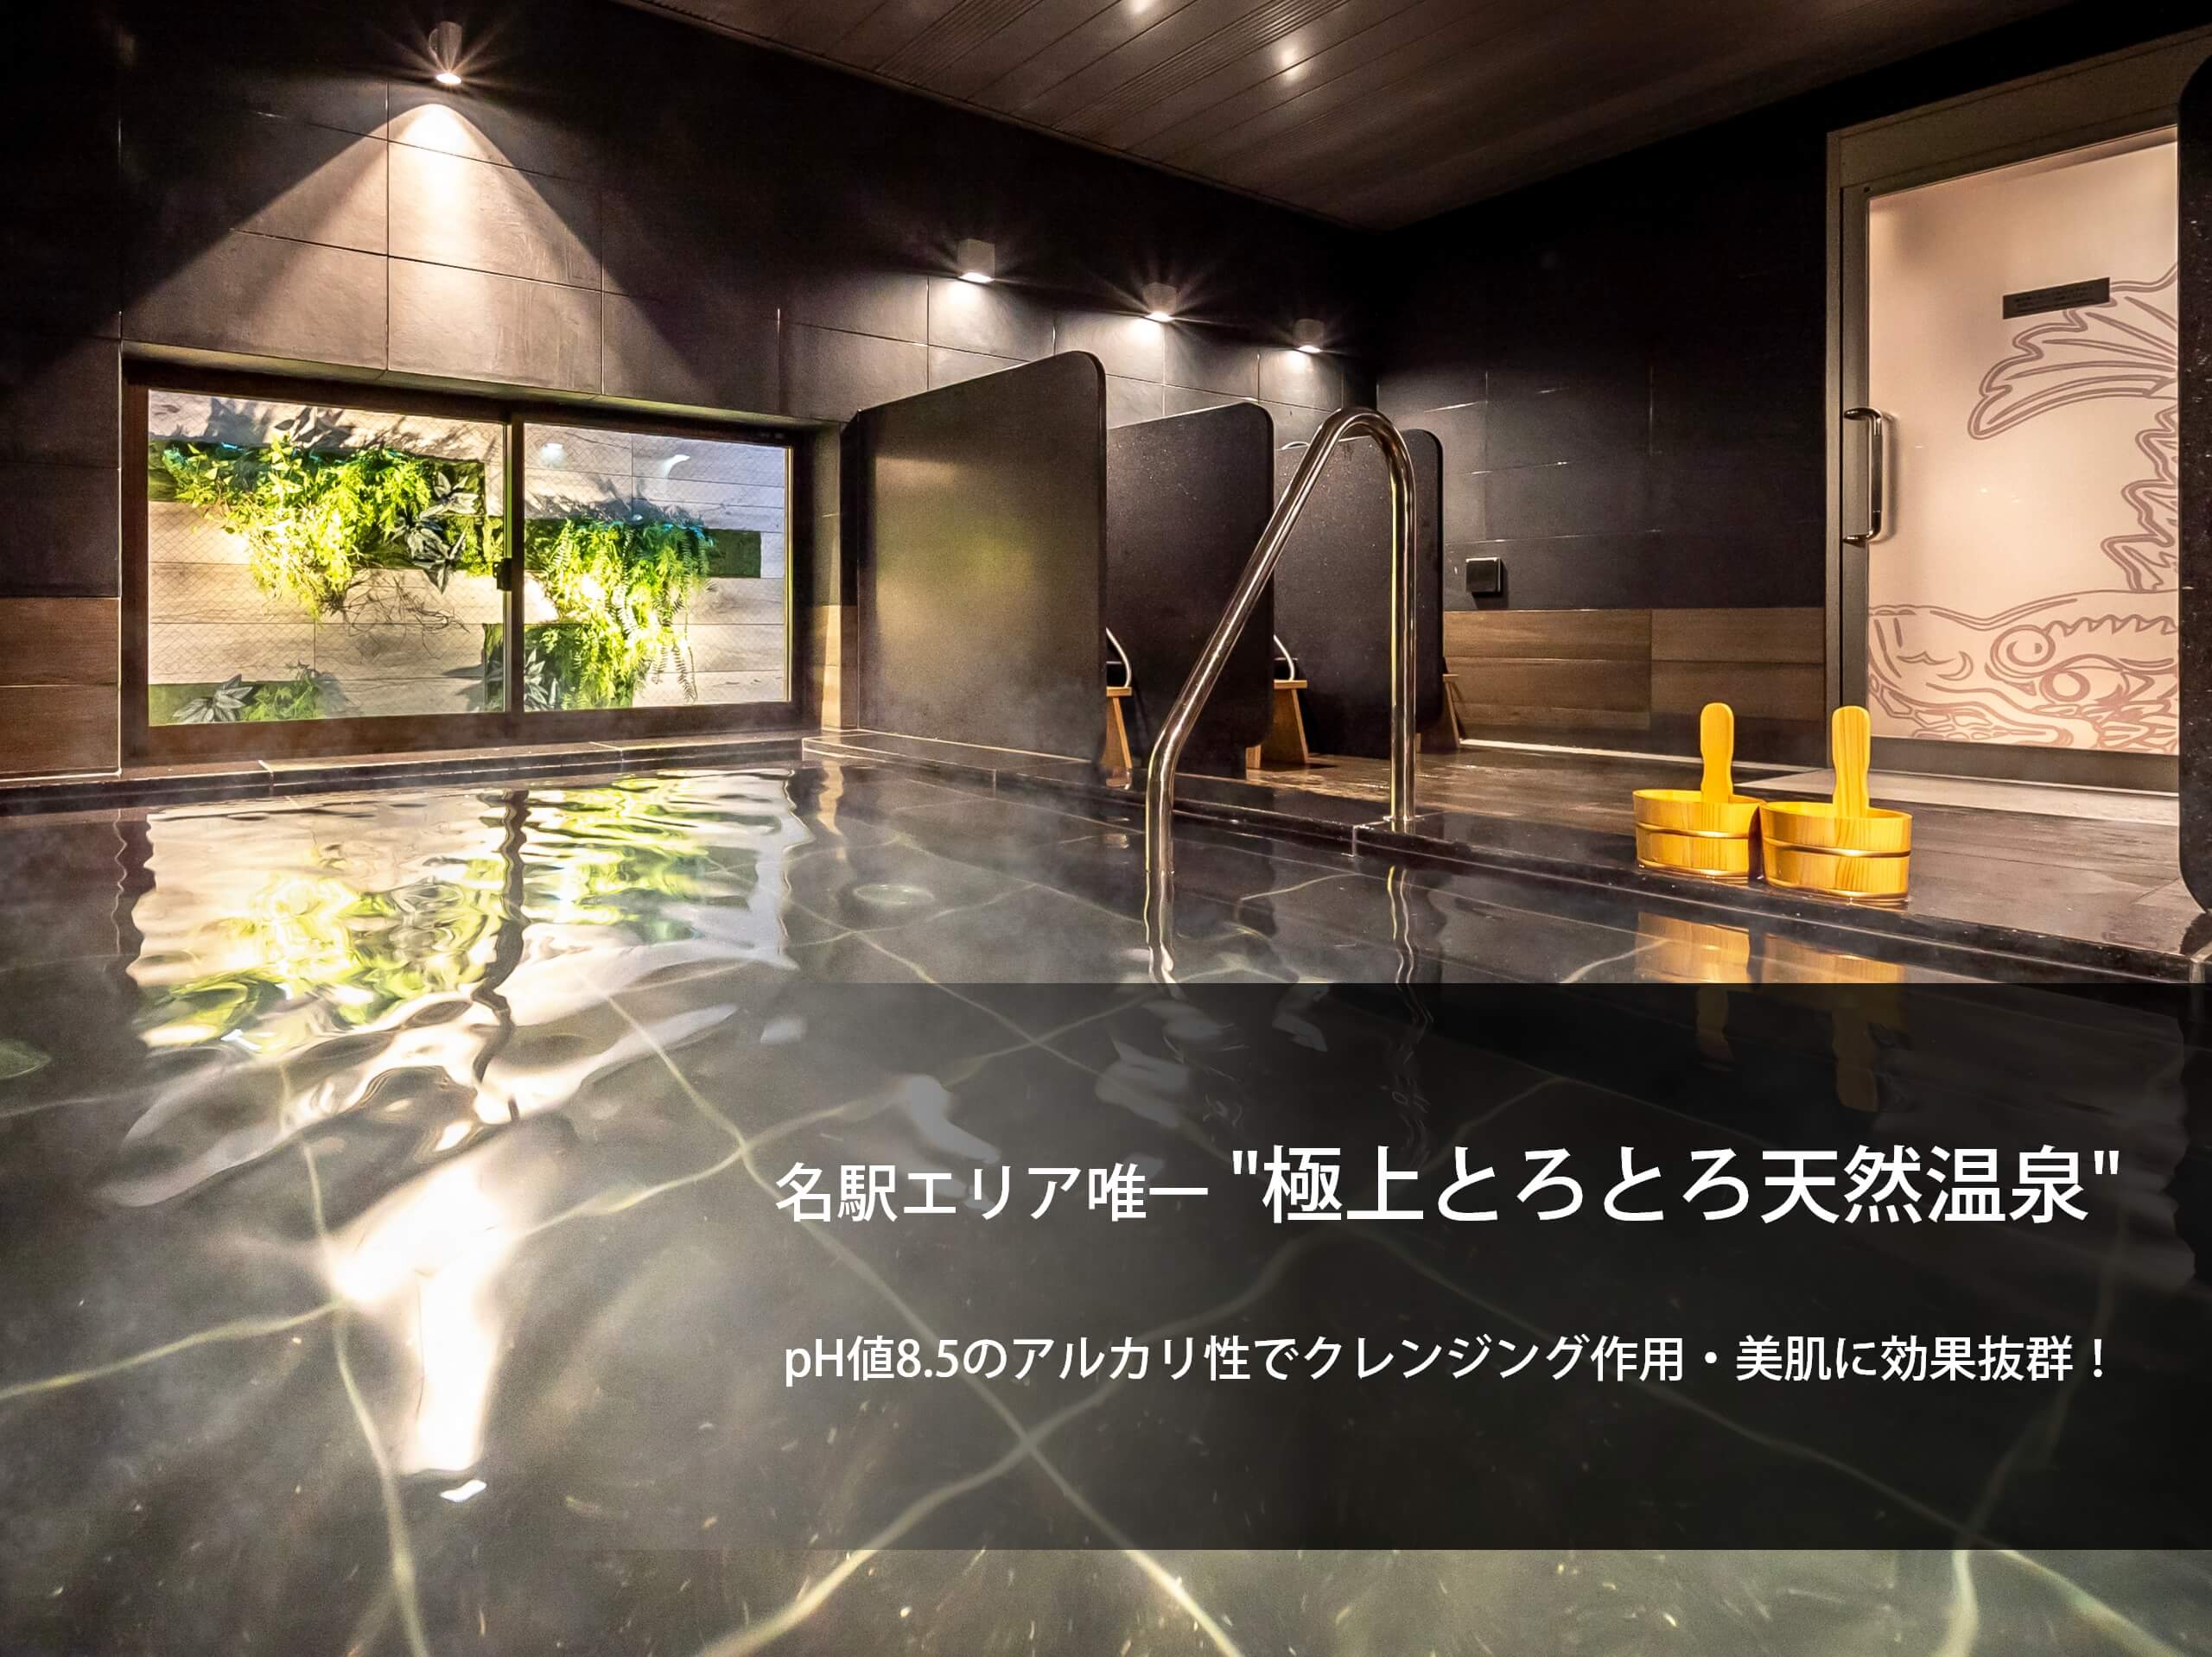 名古屋天然温泉超级饭店新干线出口 超级酒店